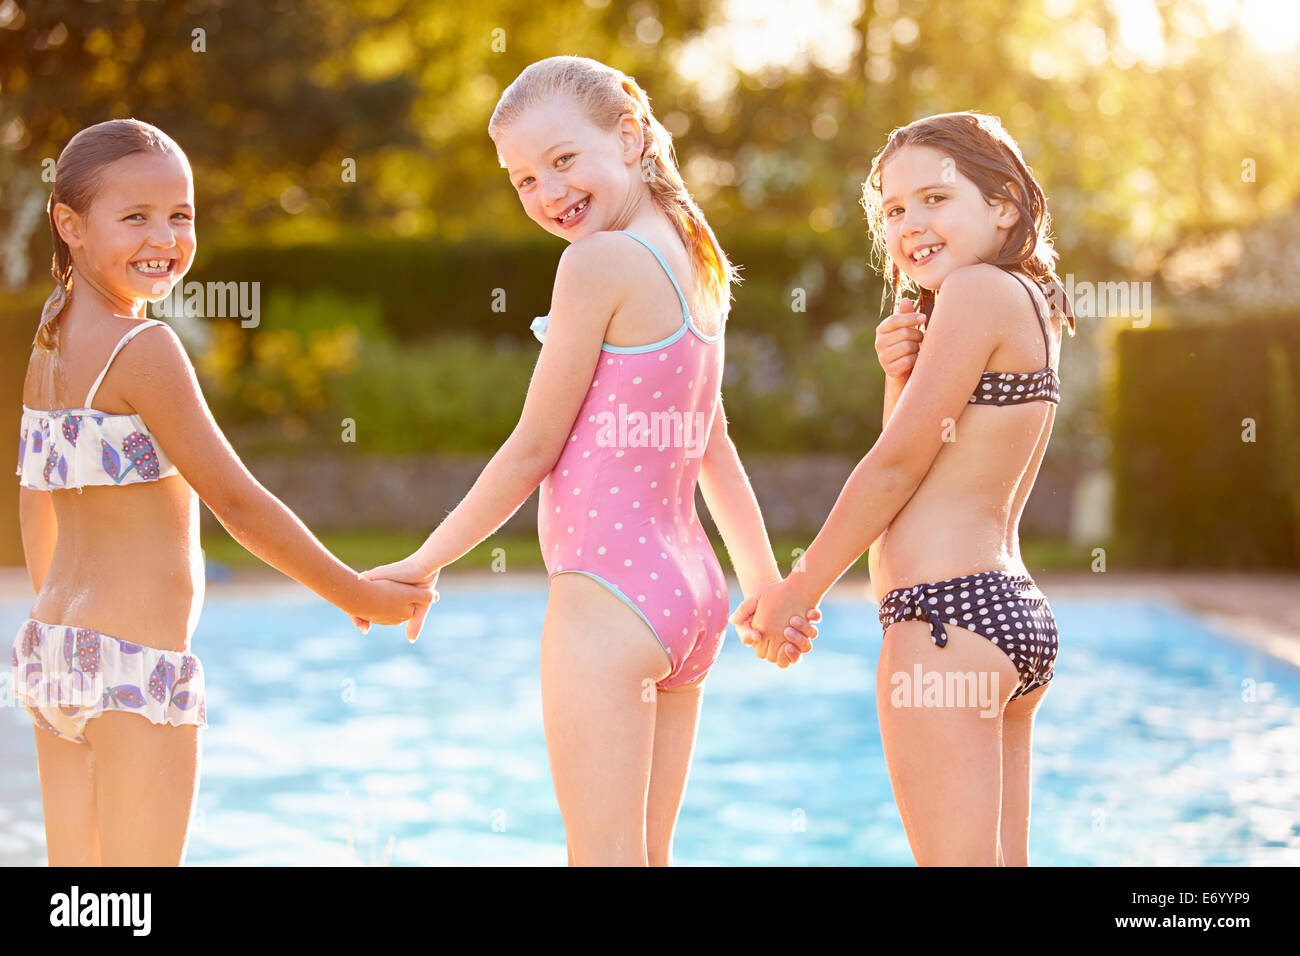 Gruppe Von Mädchen Spielen Im Freibad Stockfotografie Alamy 